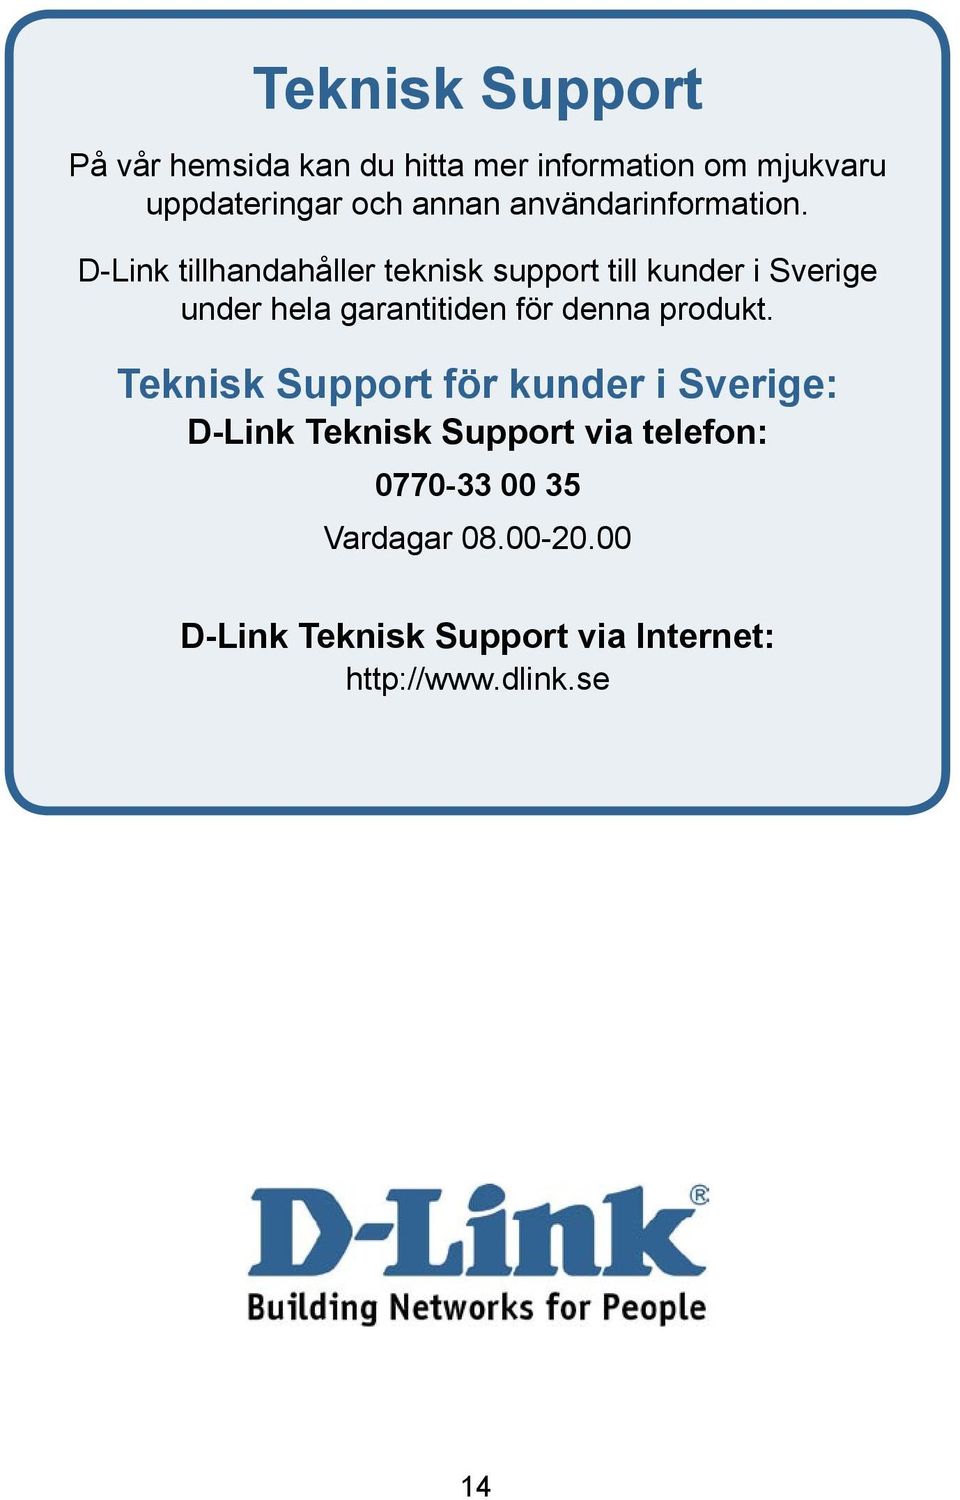 D-Link tillhandahåller teknisk support till kunder i Sverige under hela garantitiden för denna